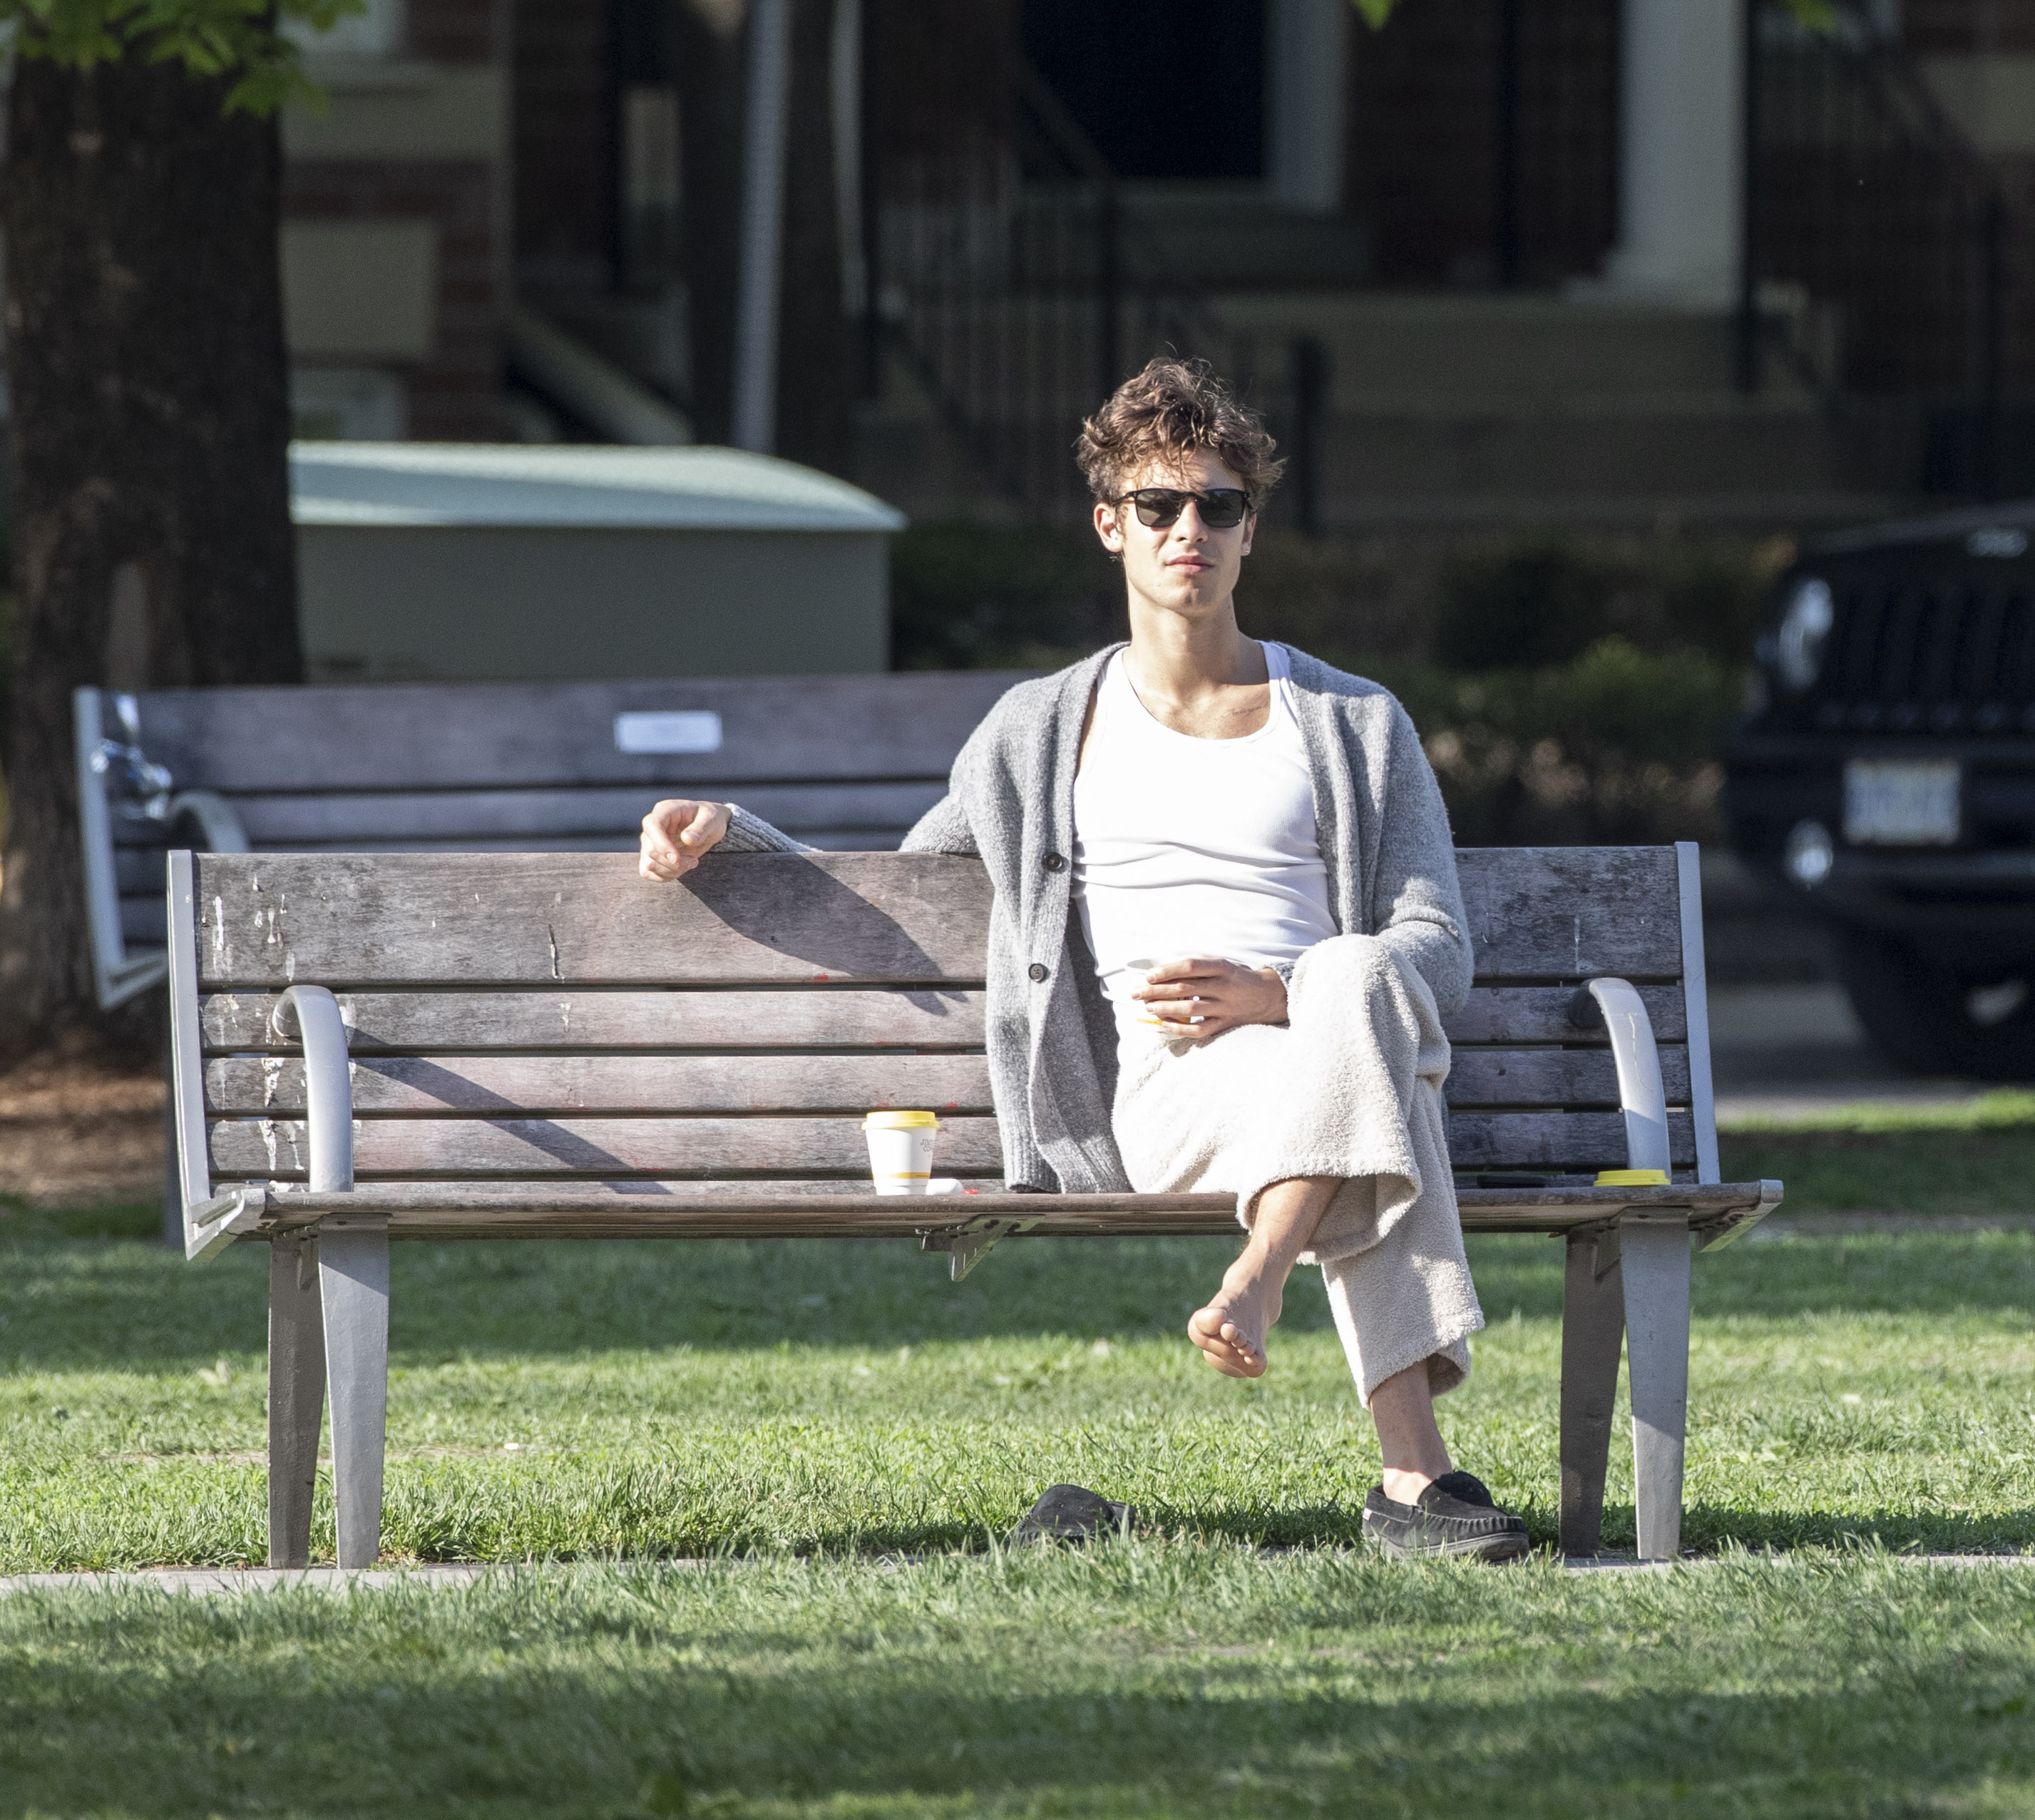 Shawn Mendes disfrutó de un día al aire libre en un parque de Toronto, Canadá. El artista se sentó en un banco a esperar a un amigo con el que se encontró. Lució un pantalón blanco de piel sintética de cordero, una remera clásica y un sweater gris de lana